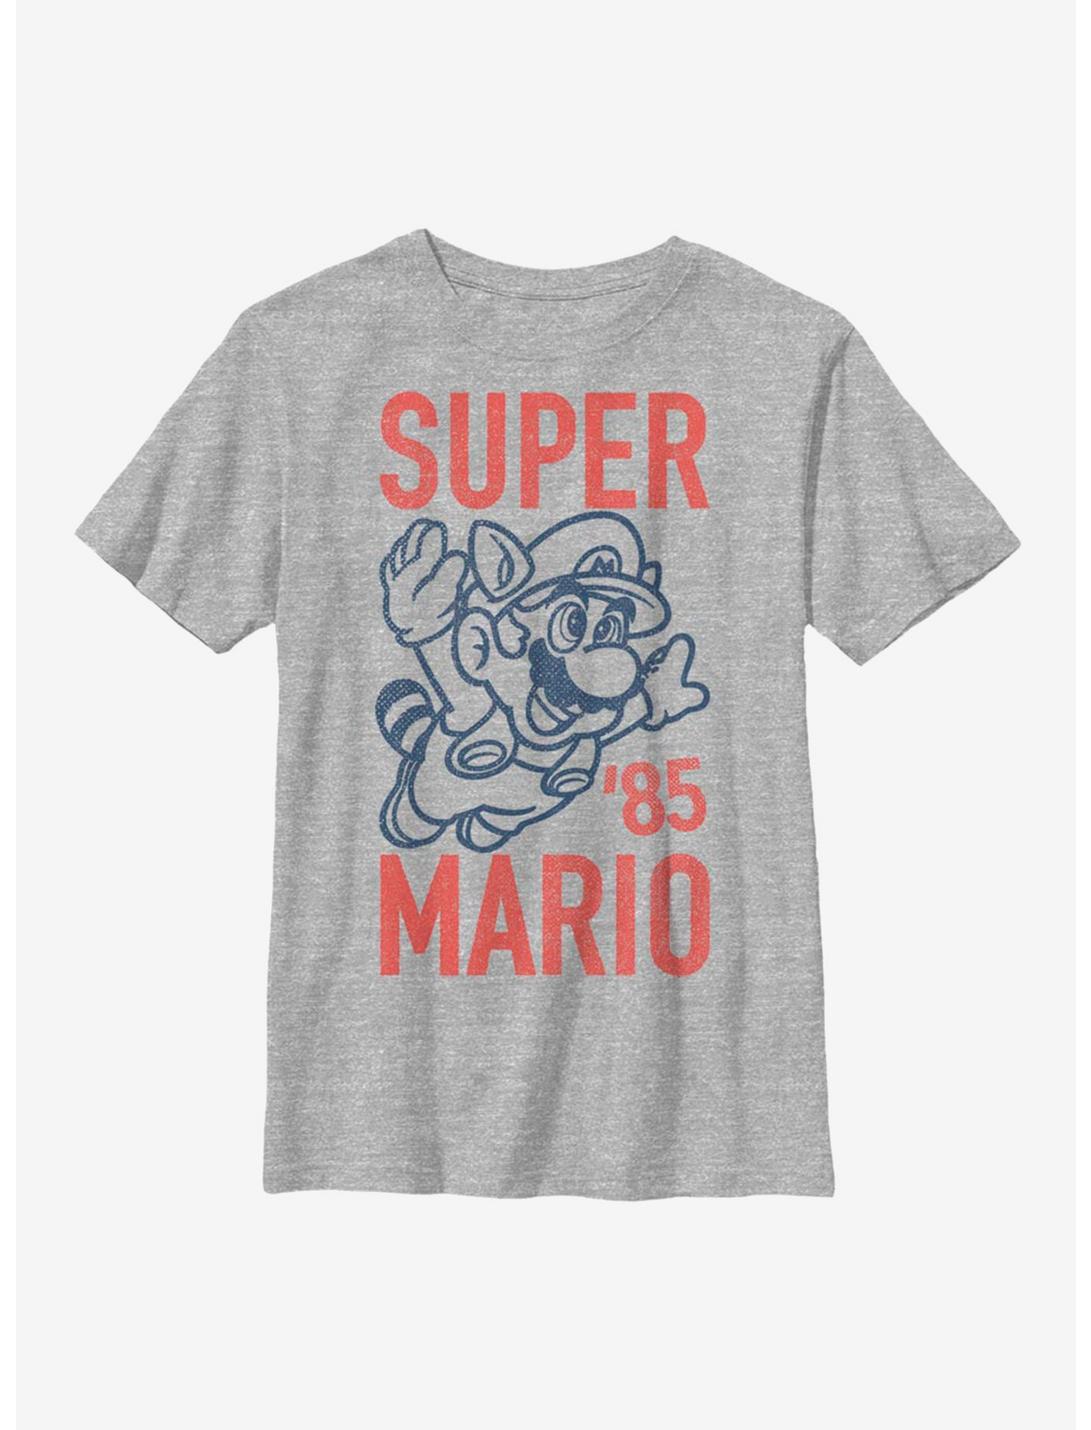 Nintendo Super Mario 85 Youth T-Shirt, ATH HTR, hi-res